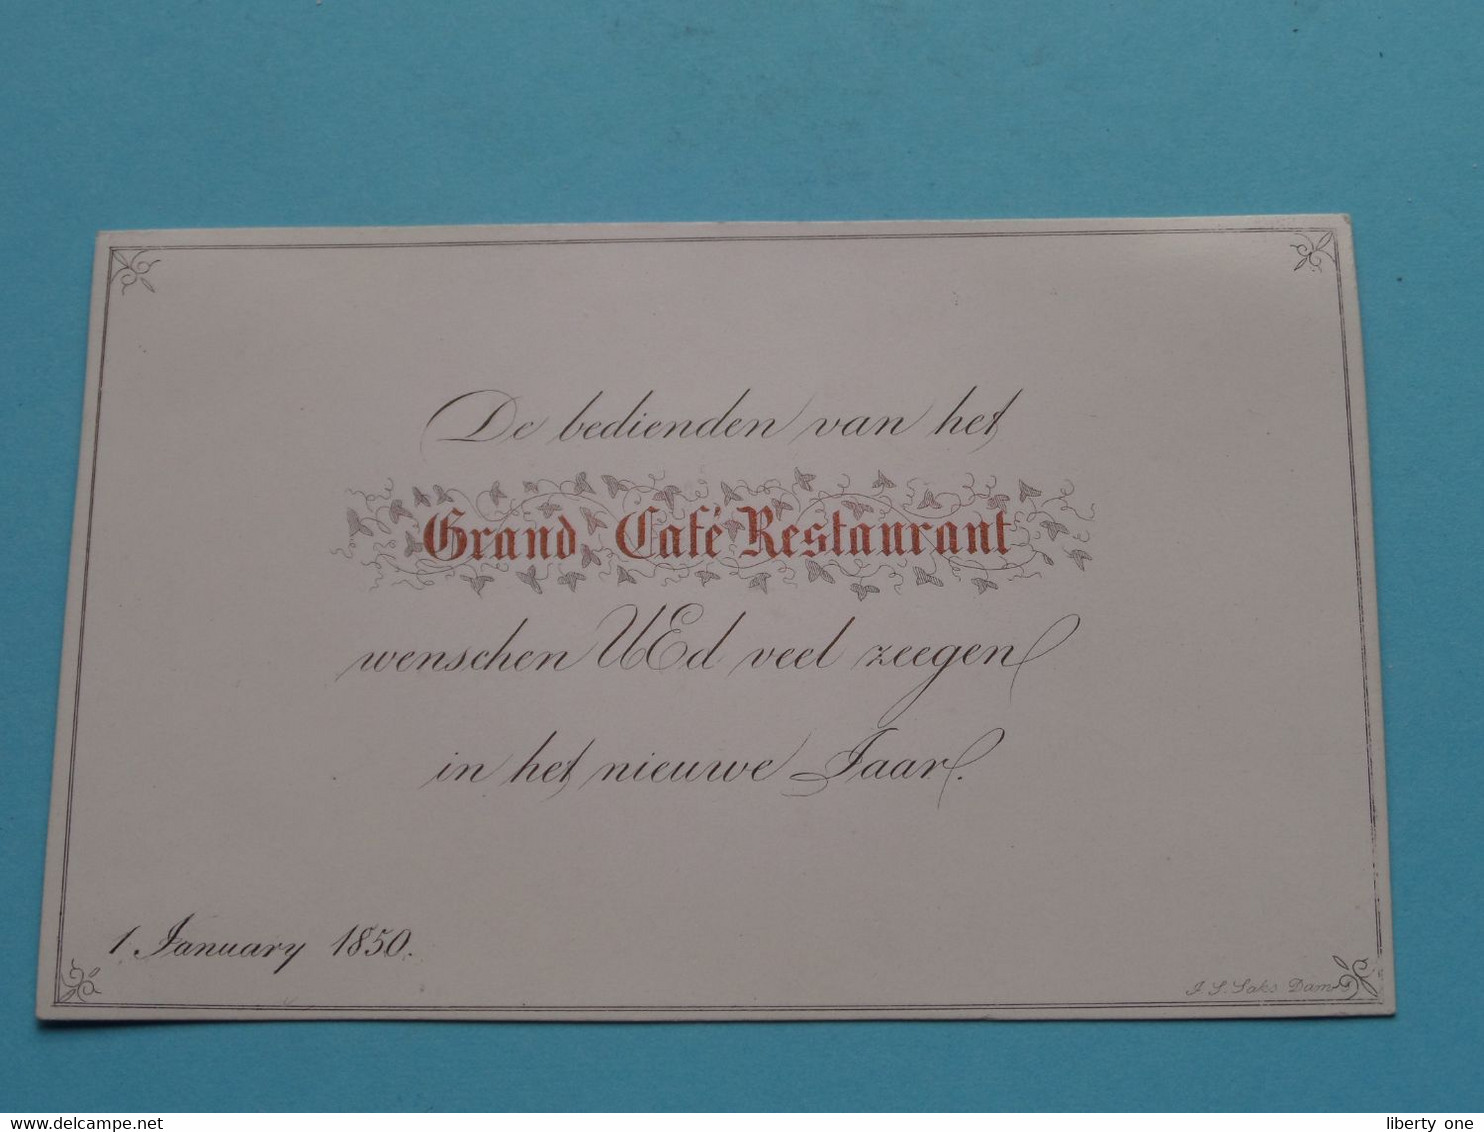 De Bedienden Van Het GRAND CAFE RESTAURANT Wenschen U >> 1 January 1850 ( Porcelein Porcelaine Porzellan ) SAKS ! - Visiting Cards